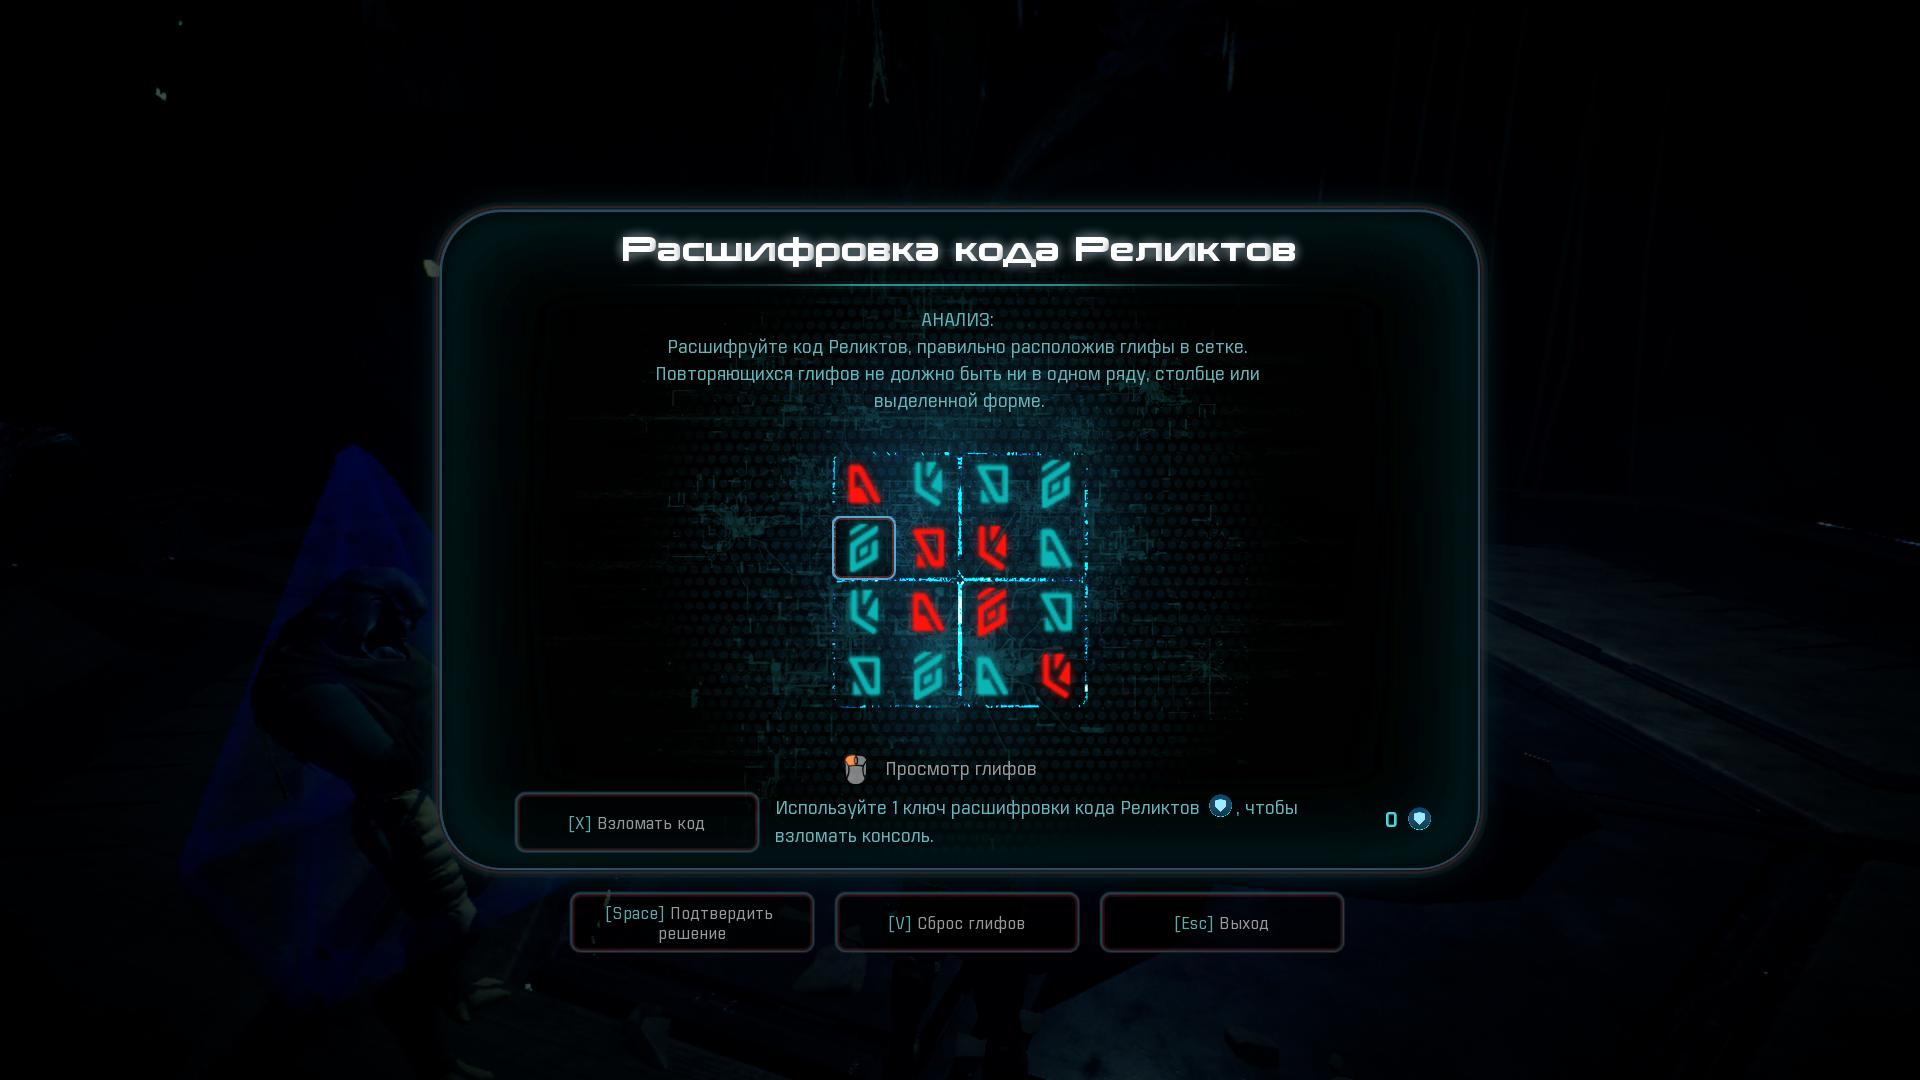 Прохождение Mass Effect Andromeda: «Луч надежды»